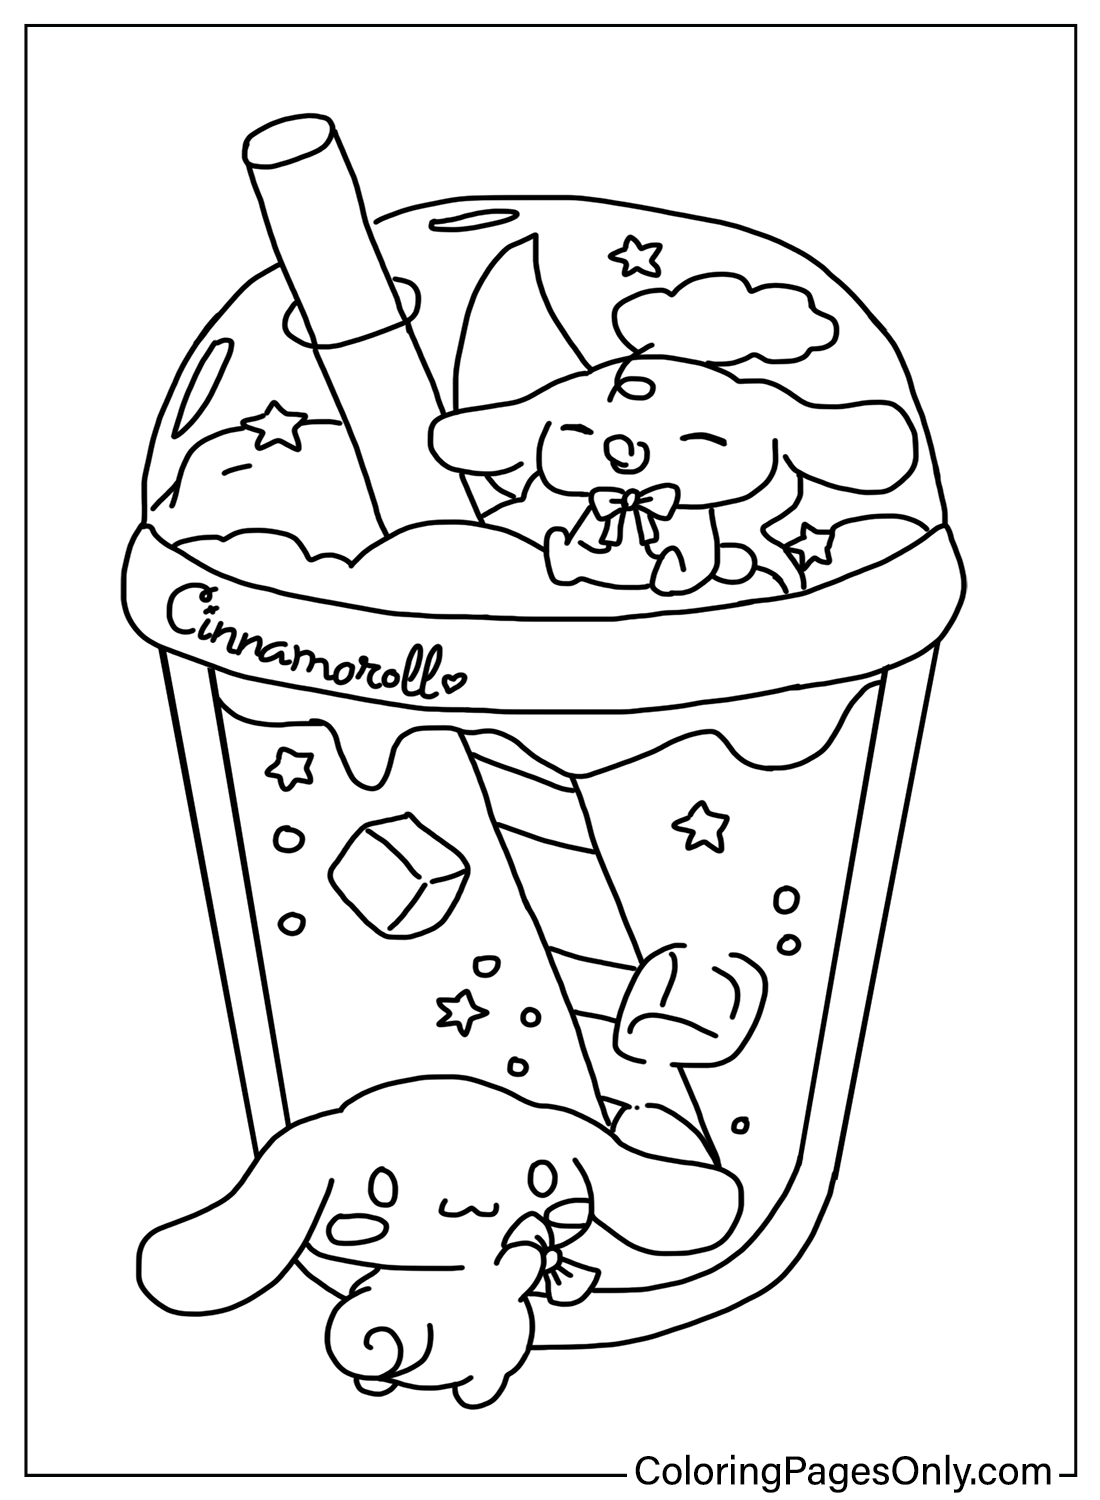 Páginas para colorear de Cinnamoroll Bubble Tea de Cinnamoroll